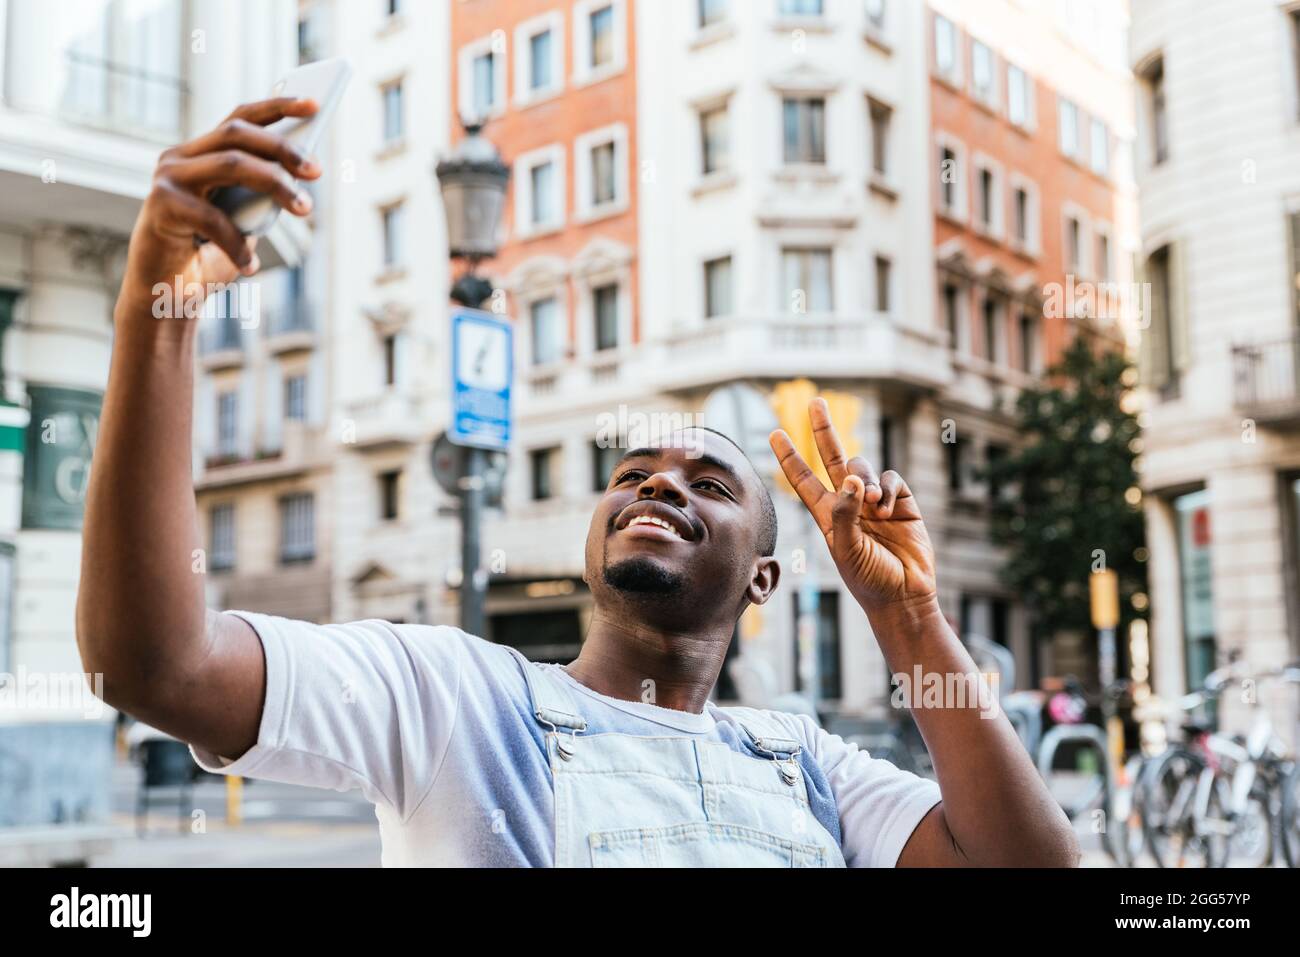 afrikanischer attraktiver Mann, der seinen Arm mit seinem Telefon hob, um ein Selfie zu machen. Er lächelt zur Kamera. Die Straßen der Stadt Barcelona im Hintergrund Stockfoto